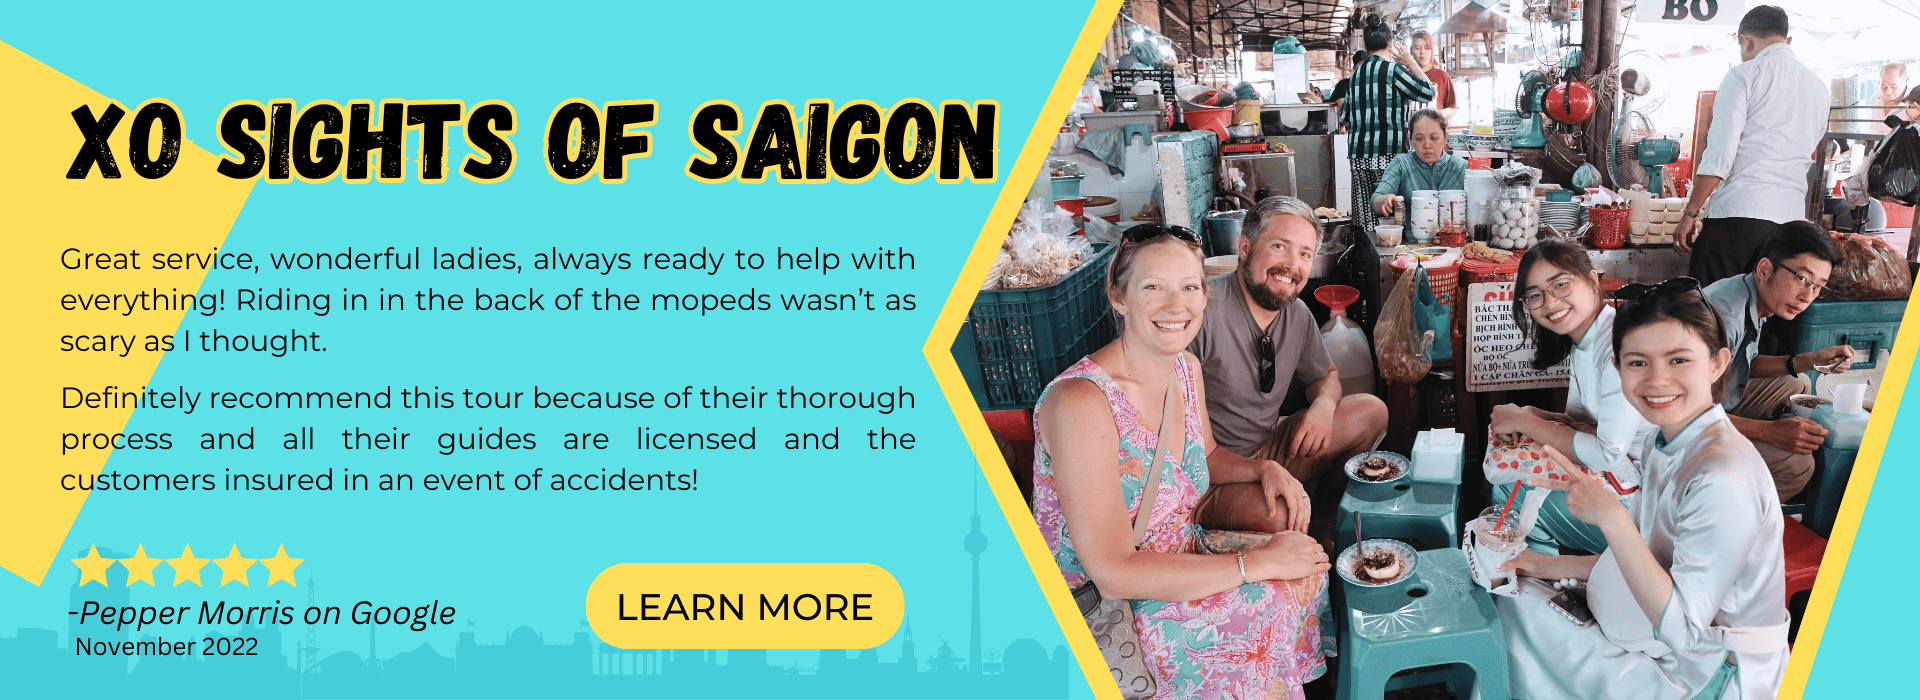 Saigon sightseeing tour